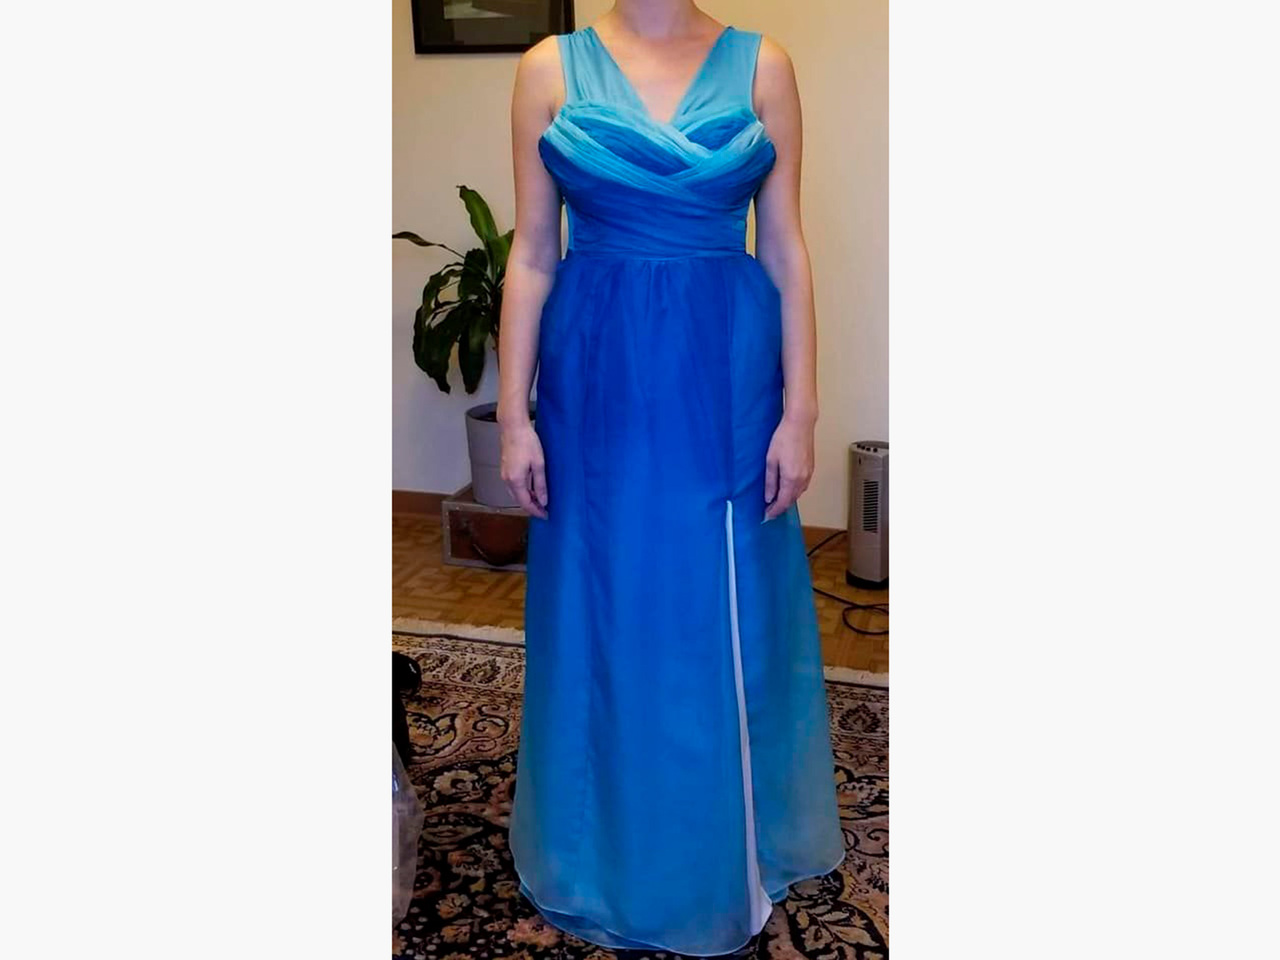 Австралийка пошила в ателье платье для свадьбы и горько разочаровалась. Фото